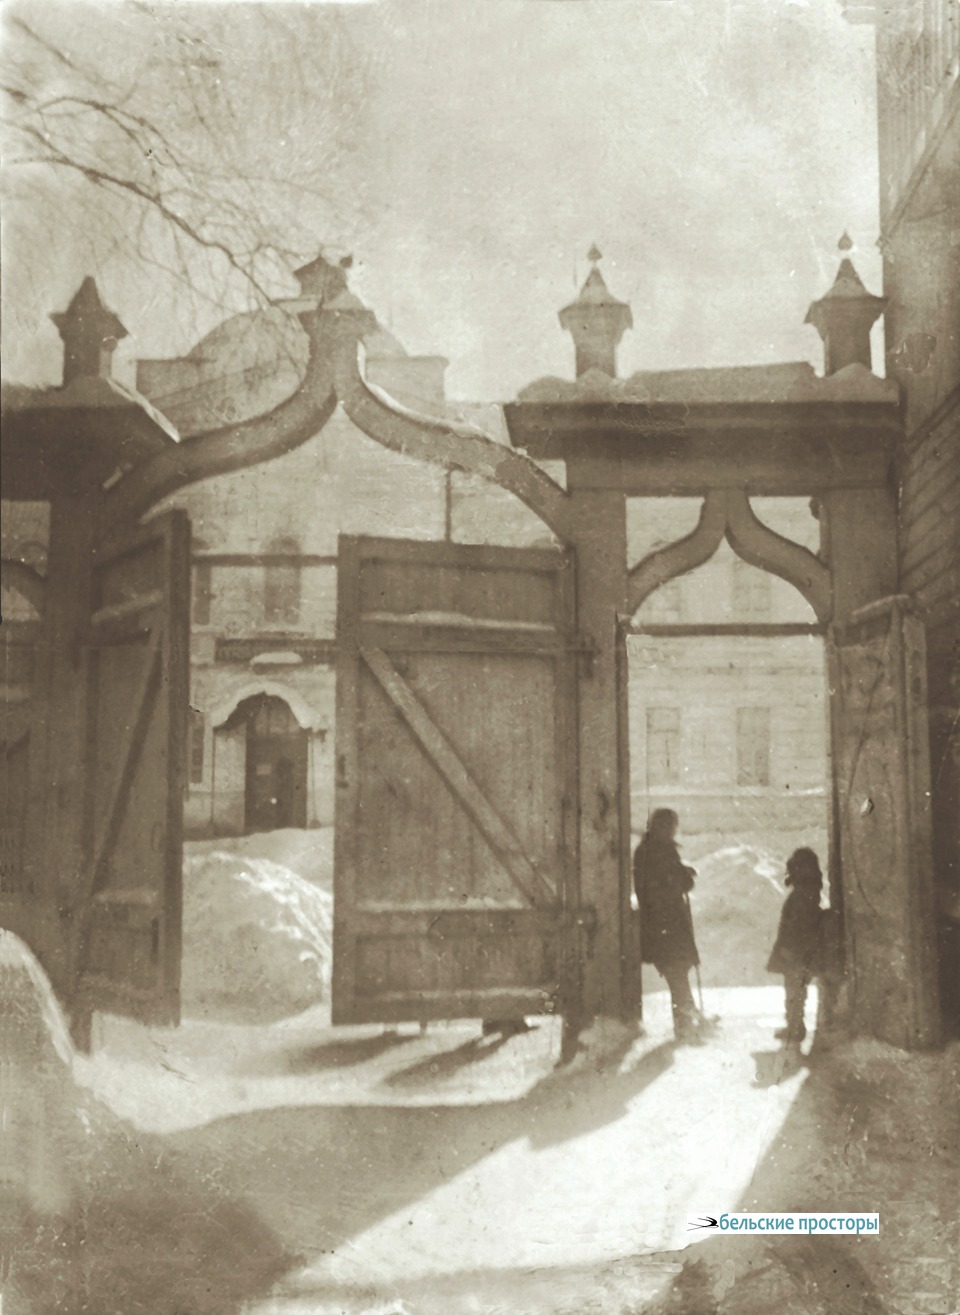 У ворот дома № 93 (ул. Пушкина). 1930 г.